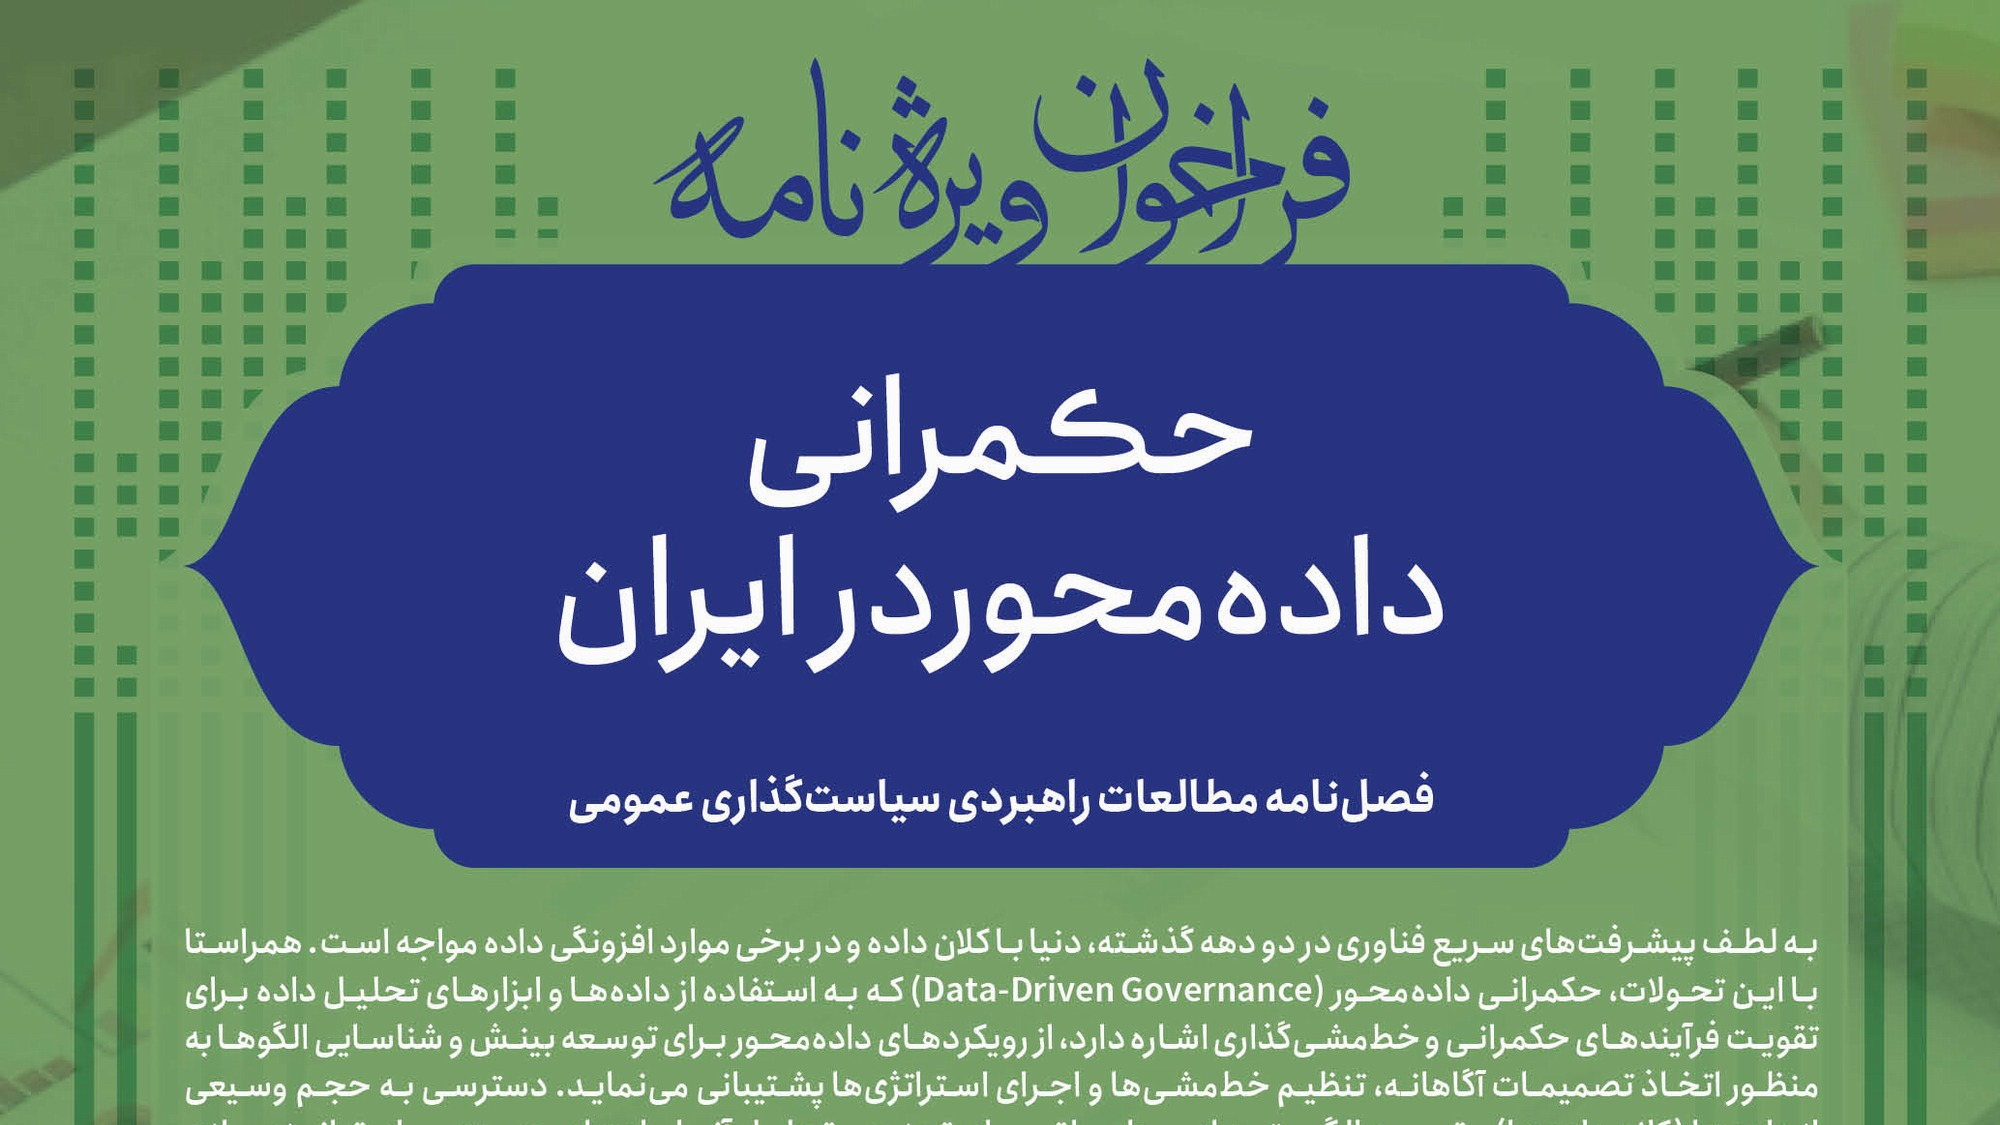 فراخوان ویژه نامه «حکمرانی داده محور در ایران»